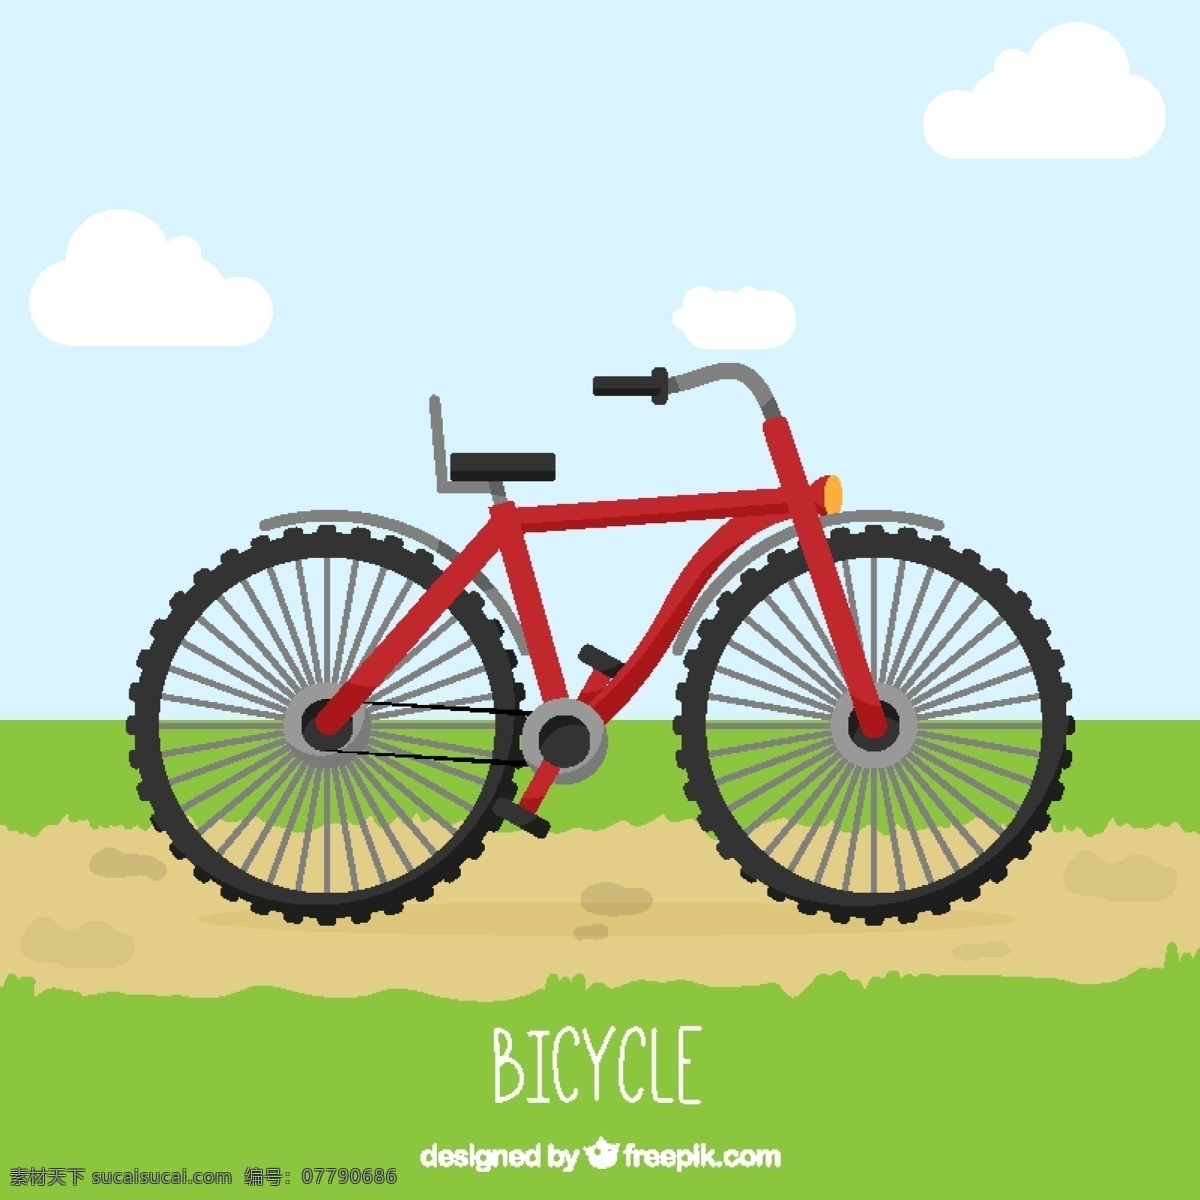 大红色 自行车 背景 运动 健身 健康 红色 壁纸 交通 连锁 培训 生活 周期 生活方式 锻炼